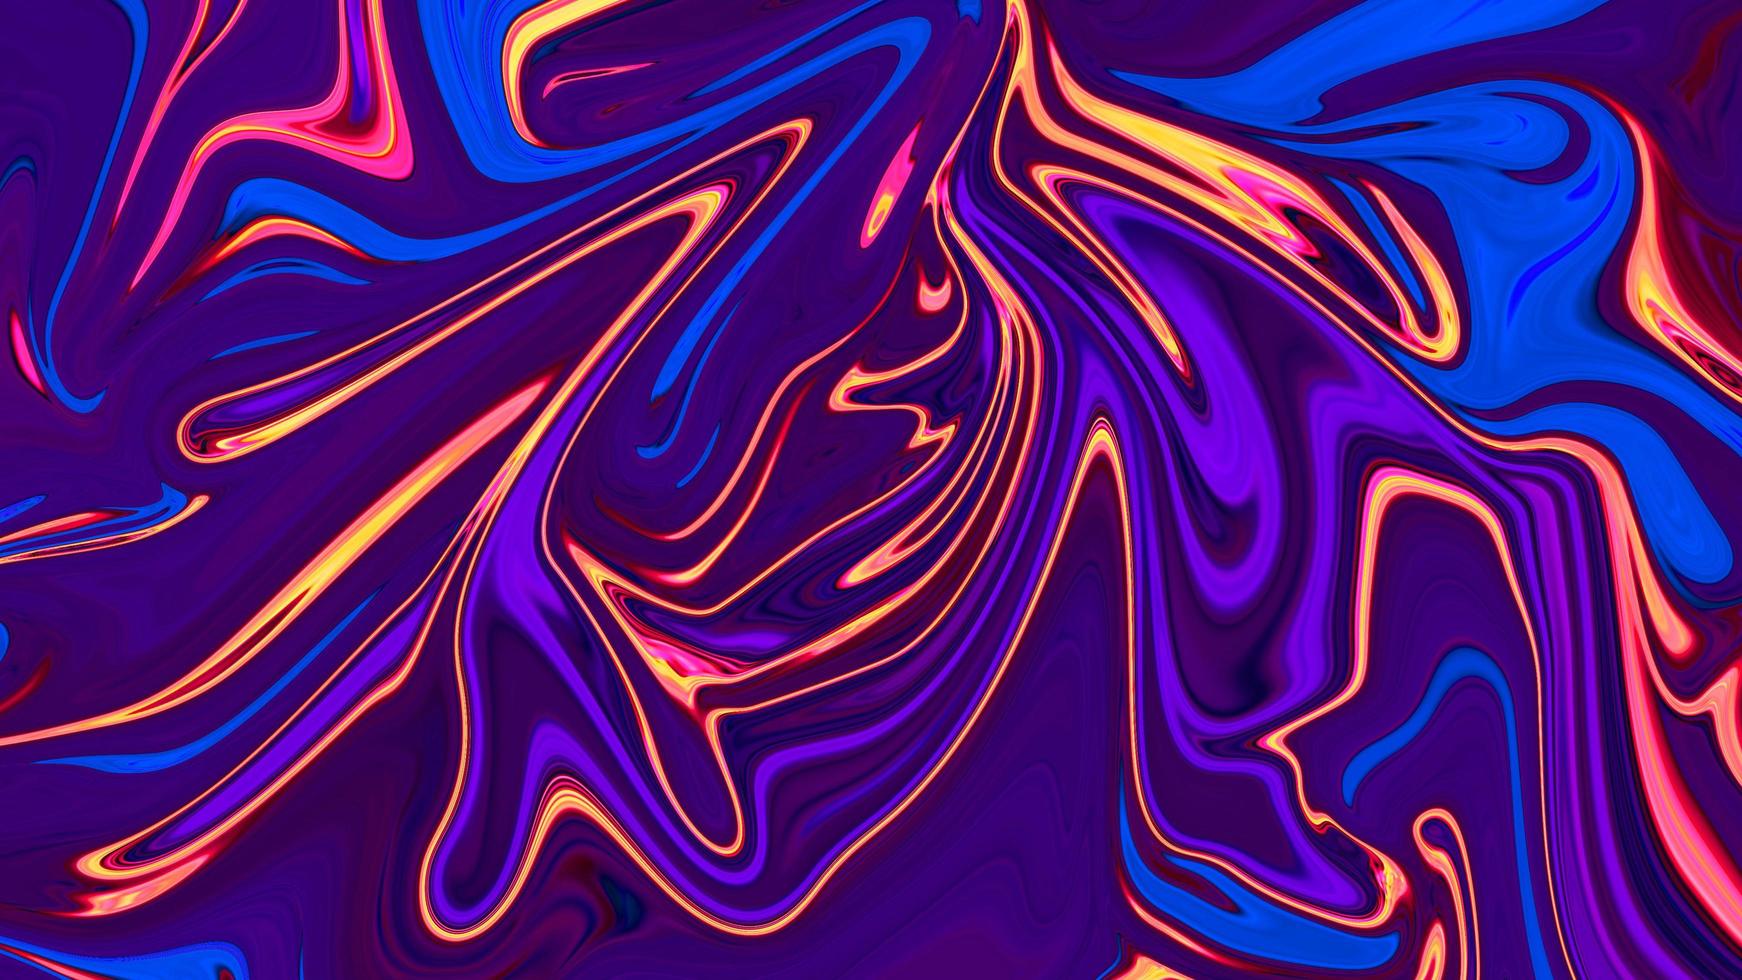 Mezcla de colores púrpura y azul y amarillo, pintura abstracta multicolor y de mármol, estampado de moda, diseño de fondo natural curva de línea líquida que fluye en una franja brillante foto